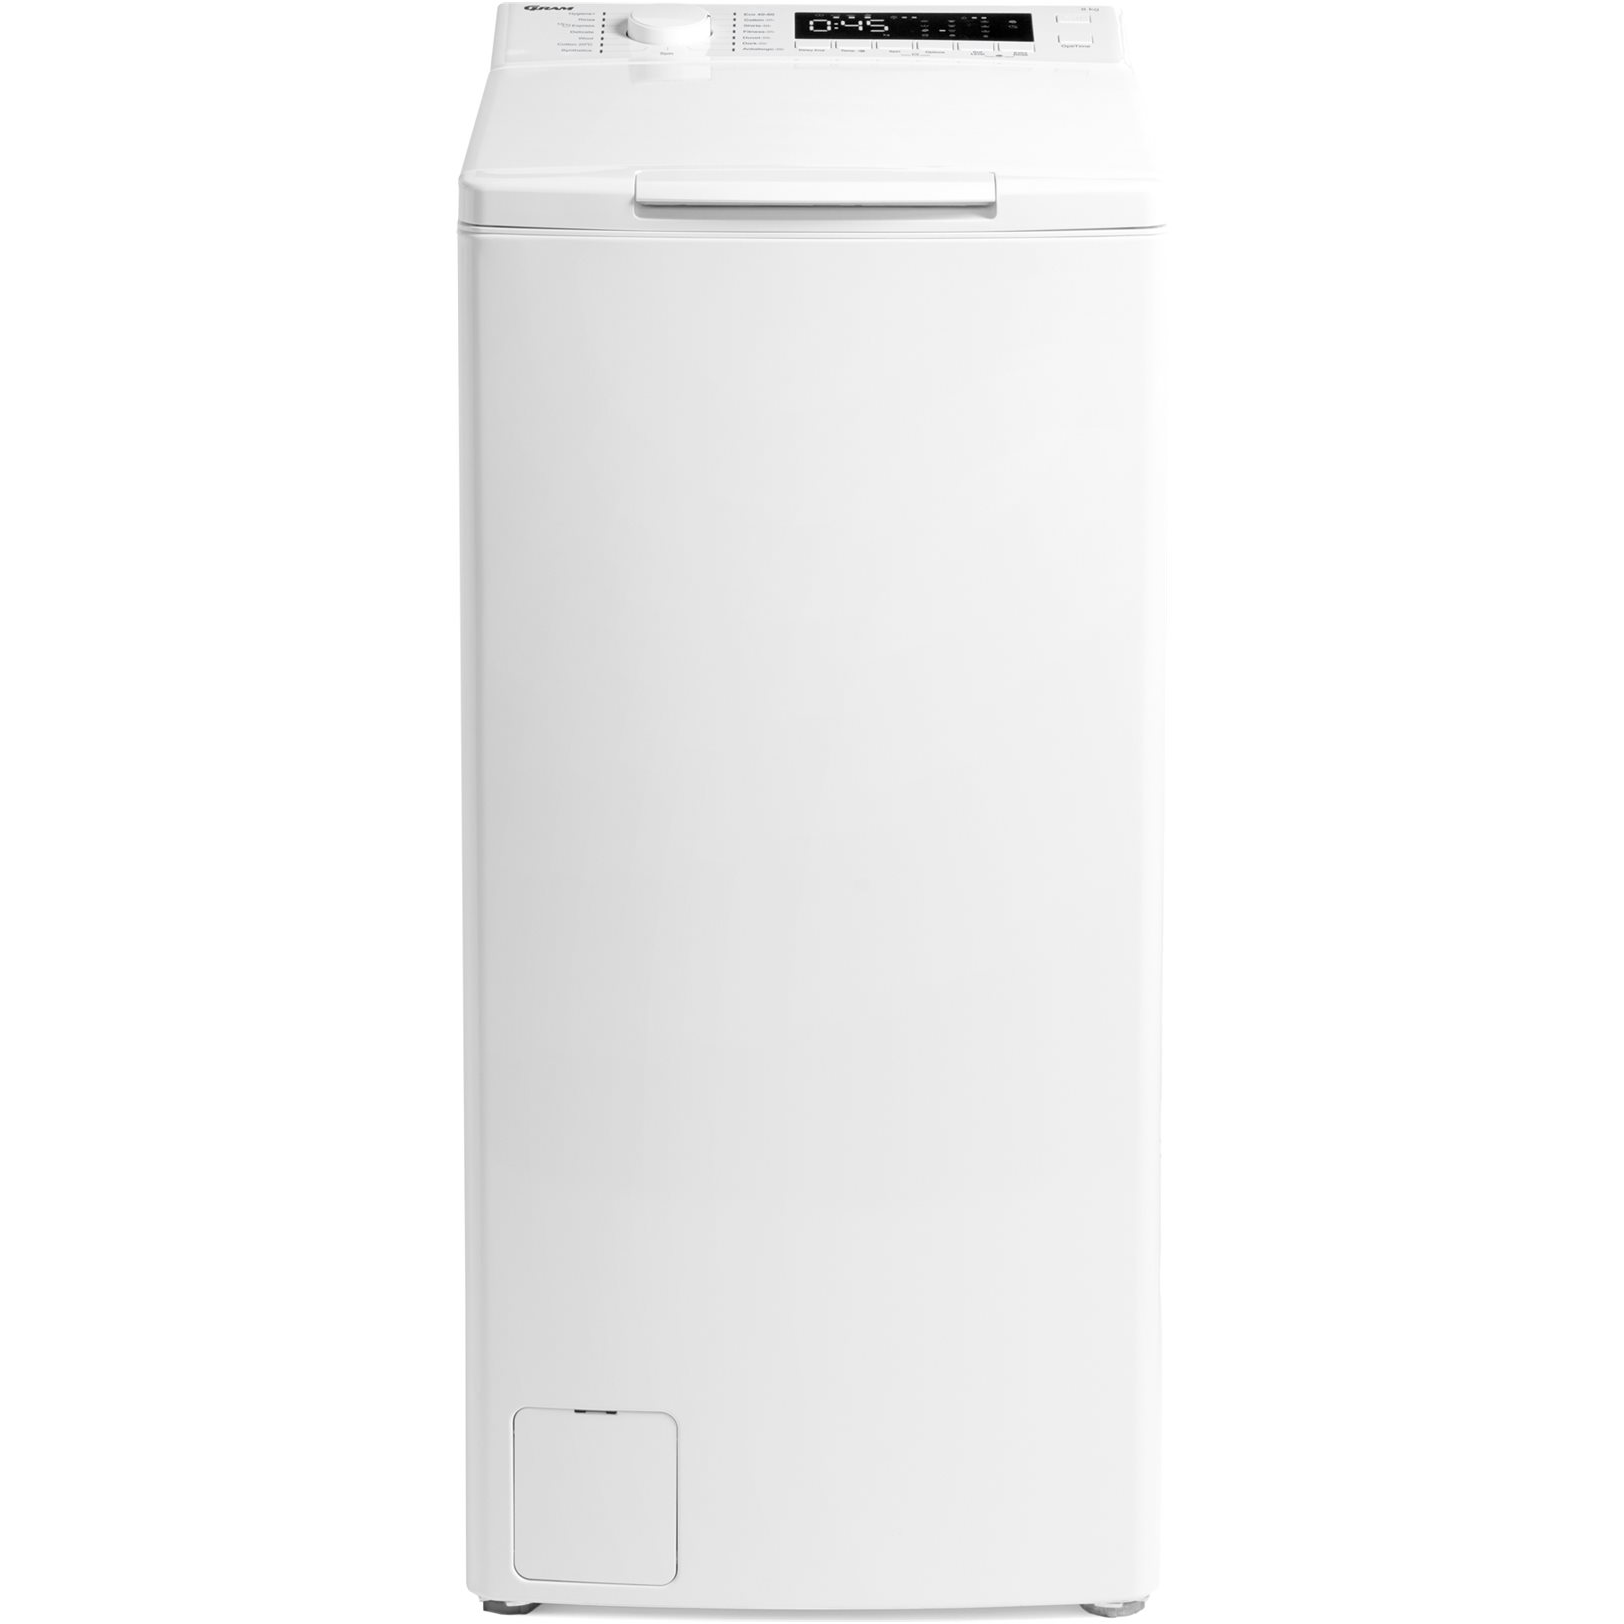 Gram WTL 21813-90 - Topbetjent vaskemaskine